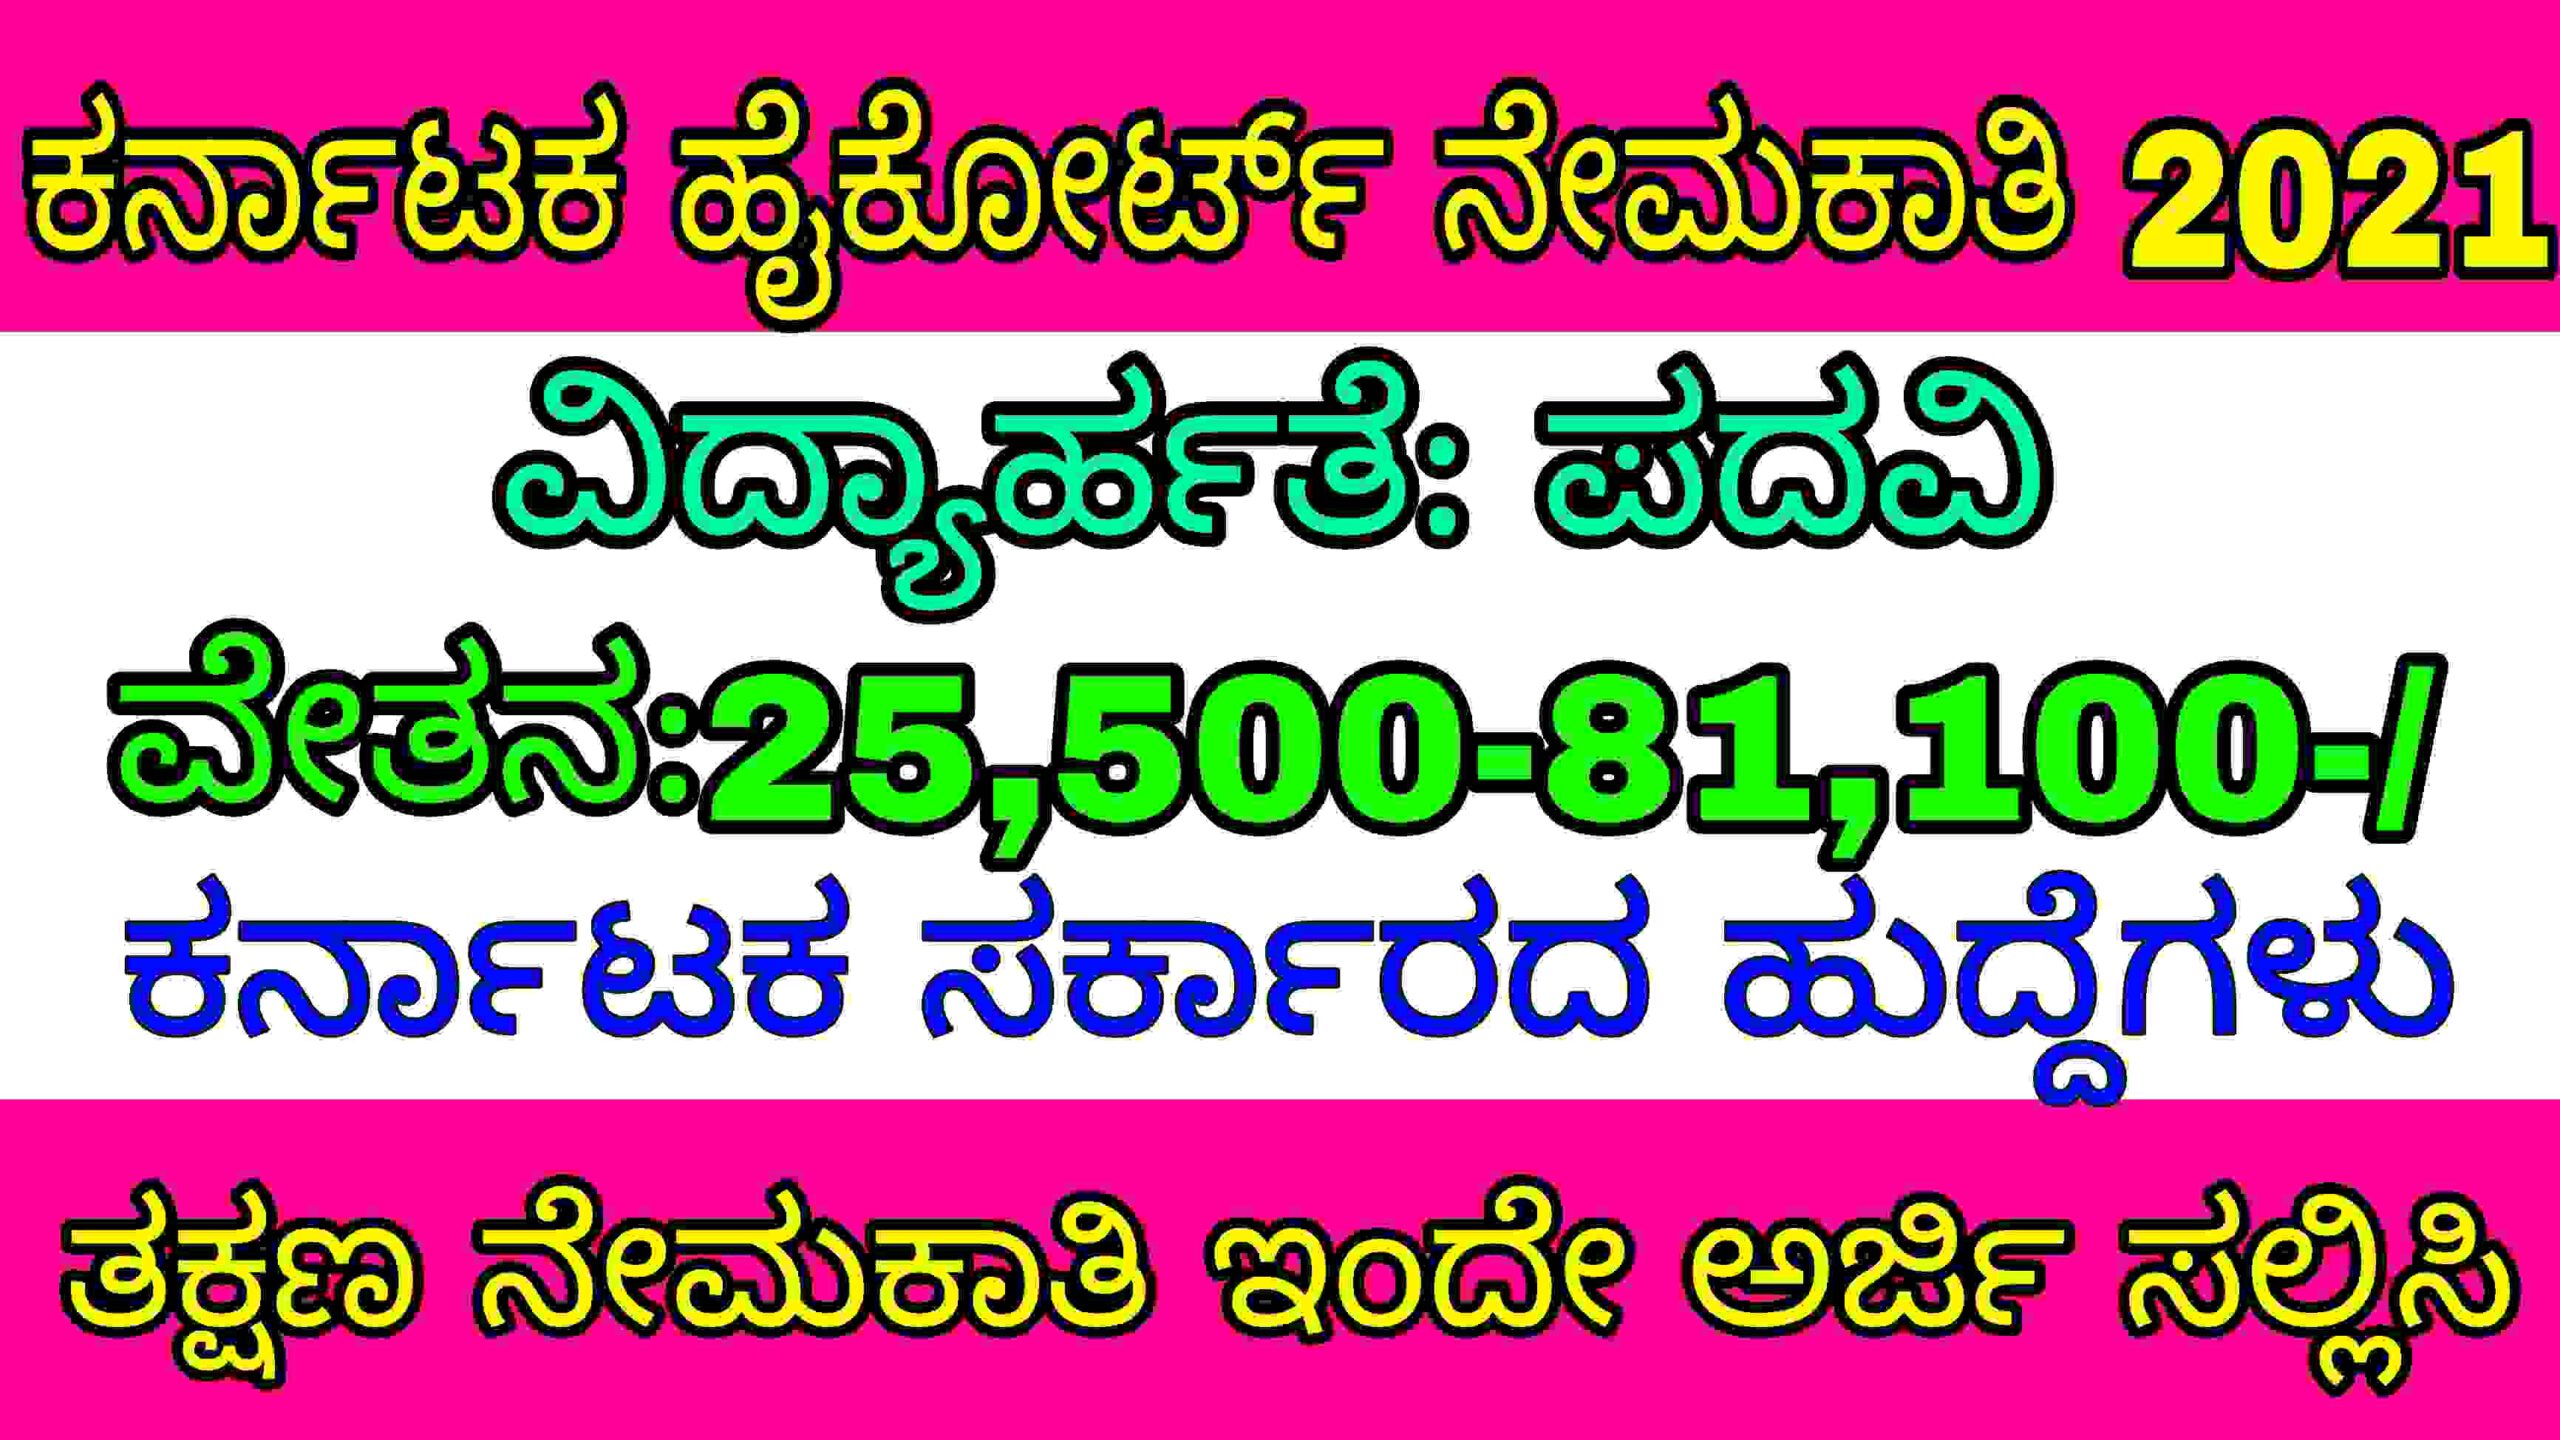 ಕರ್ನಾಟಕ ಹೈಕೋರ್ಟ್ ನೇಮಕಾತಿ 2021 Karnataka High Court recruitment 2021| karnataka government jobs